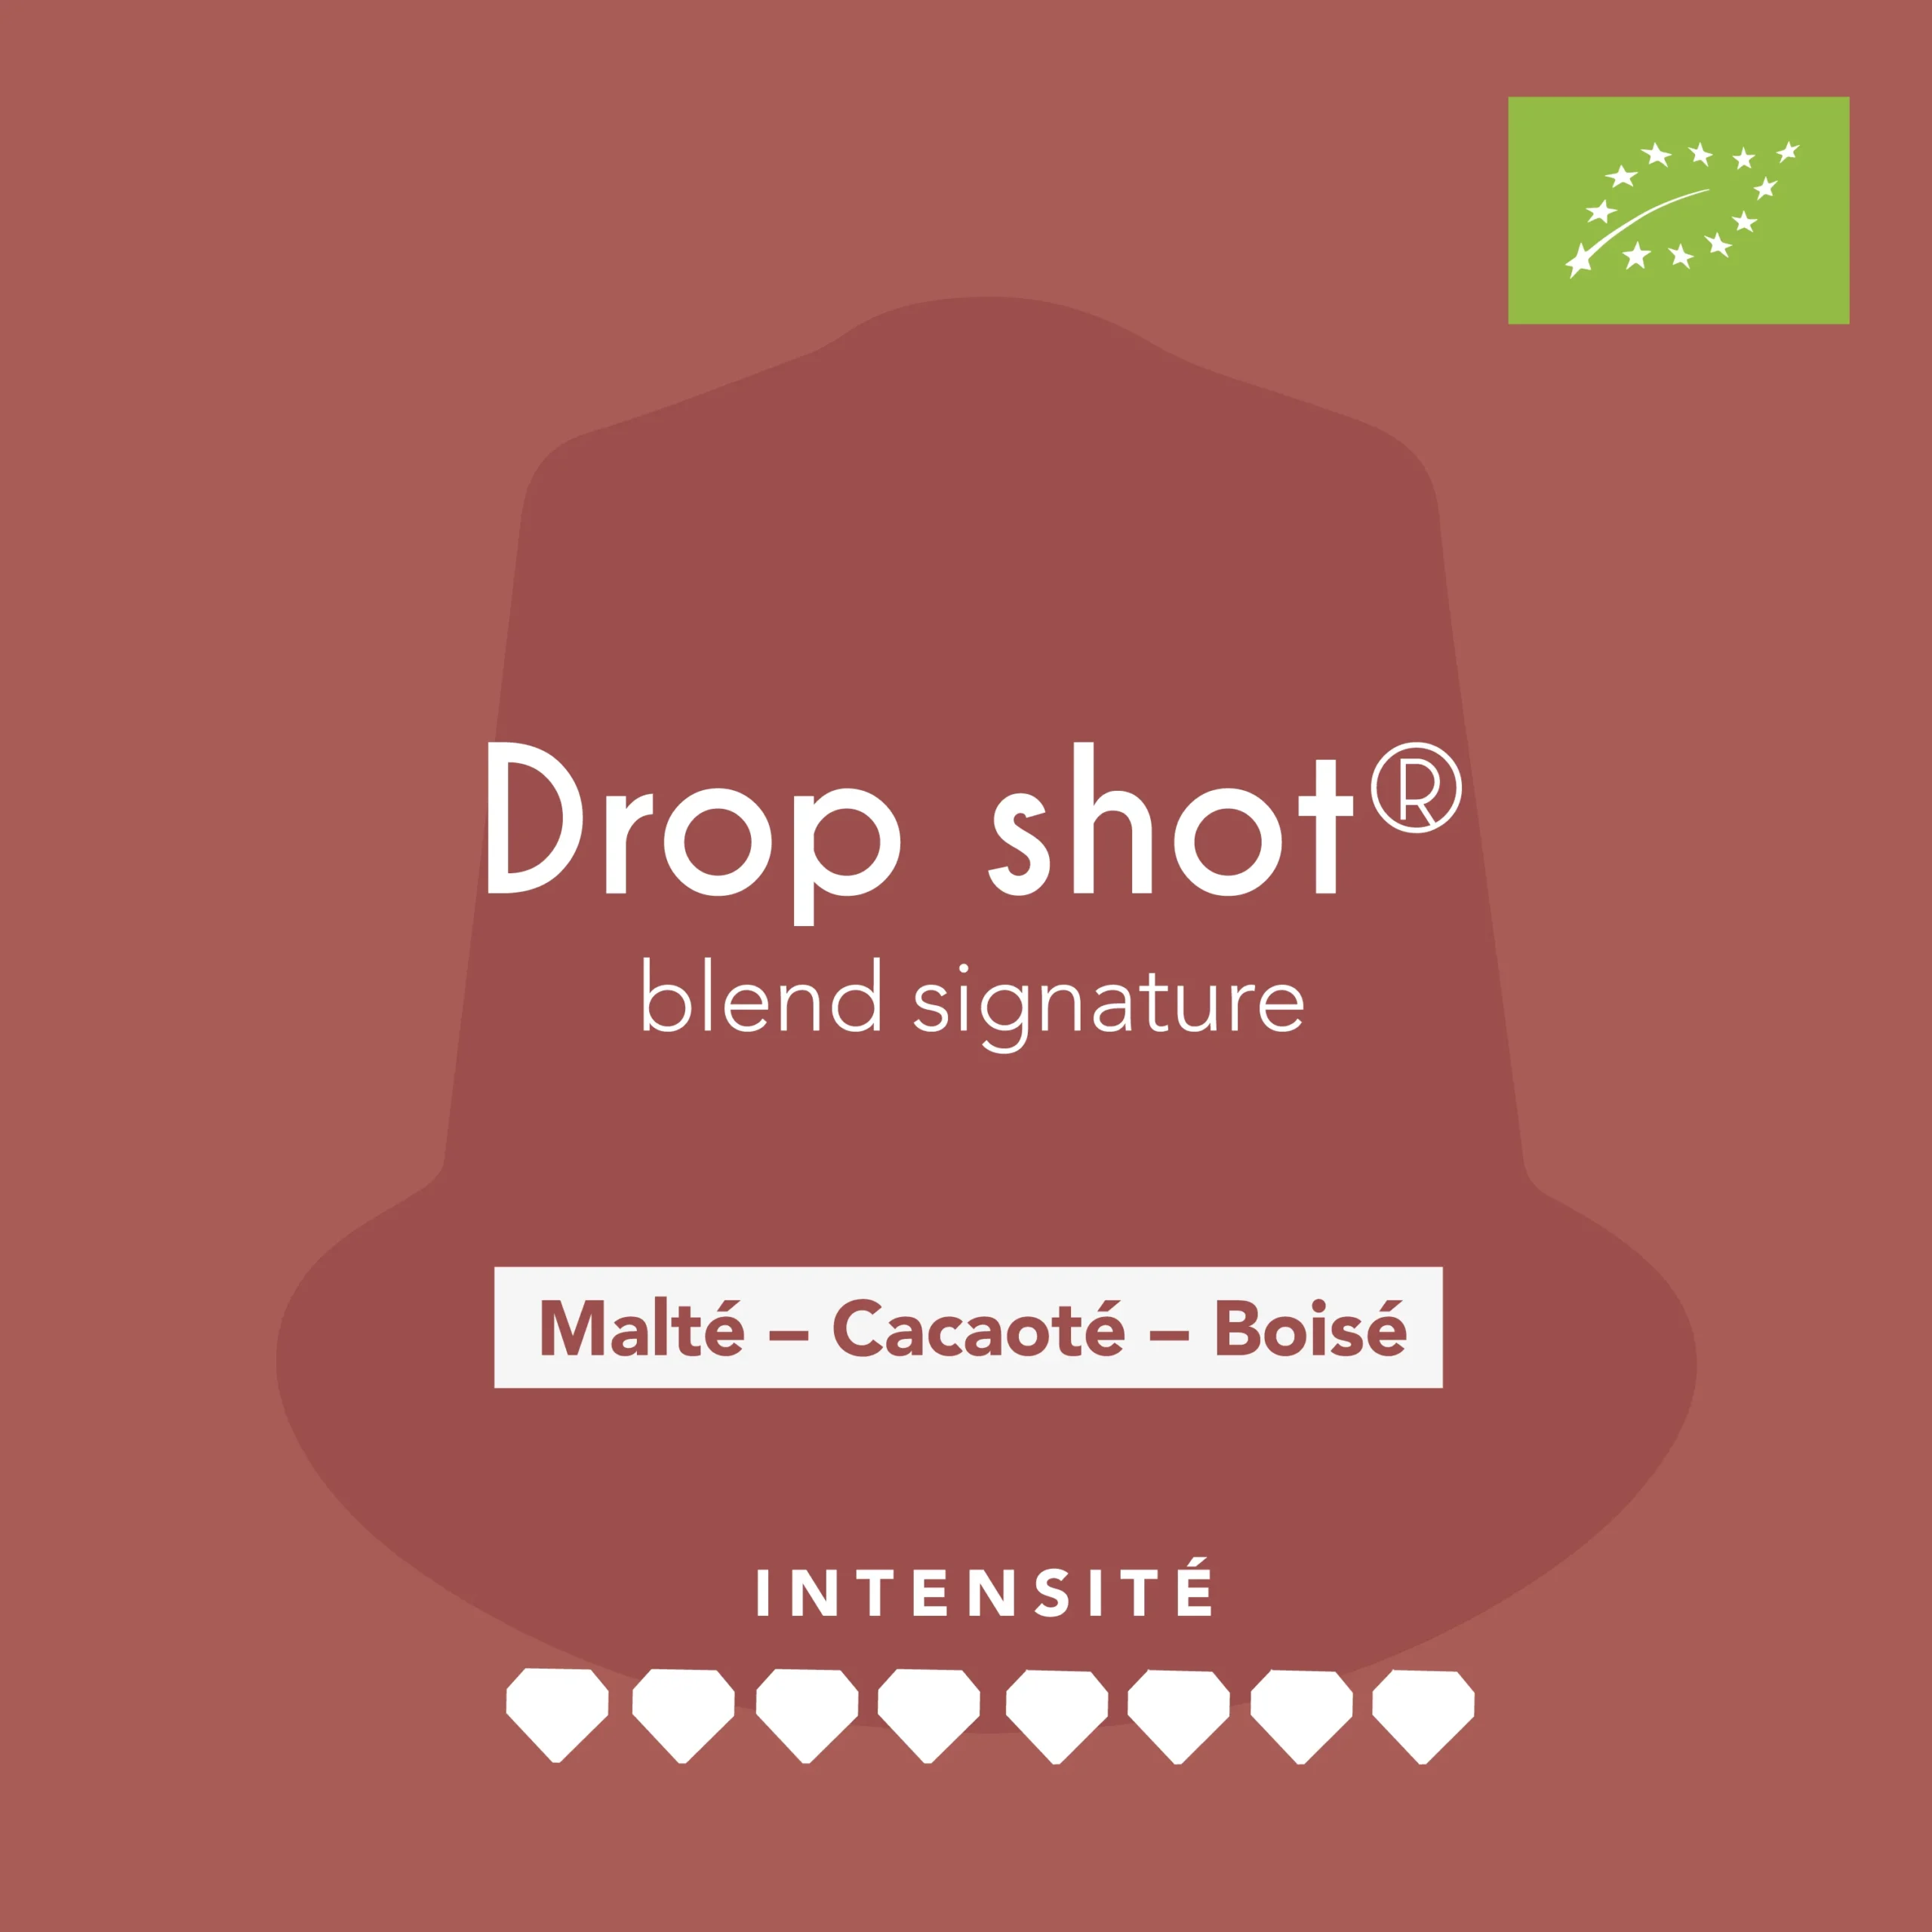 Capsule de café-Drop shot